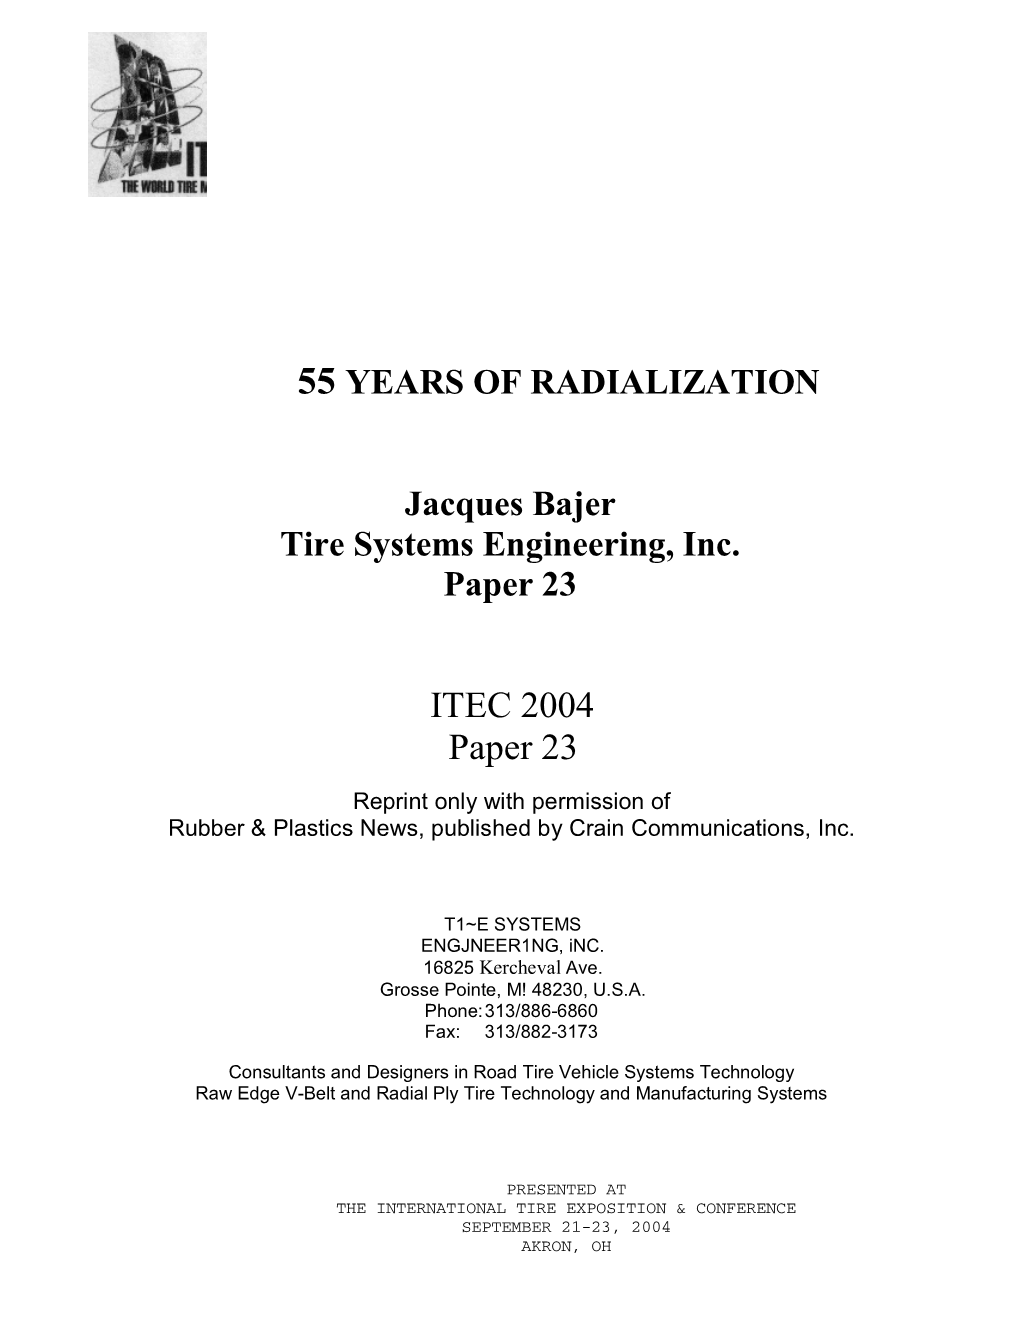 ITEC 2004 Paper 23